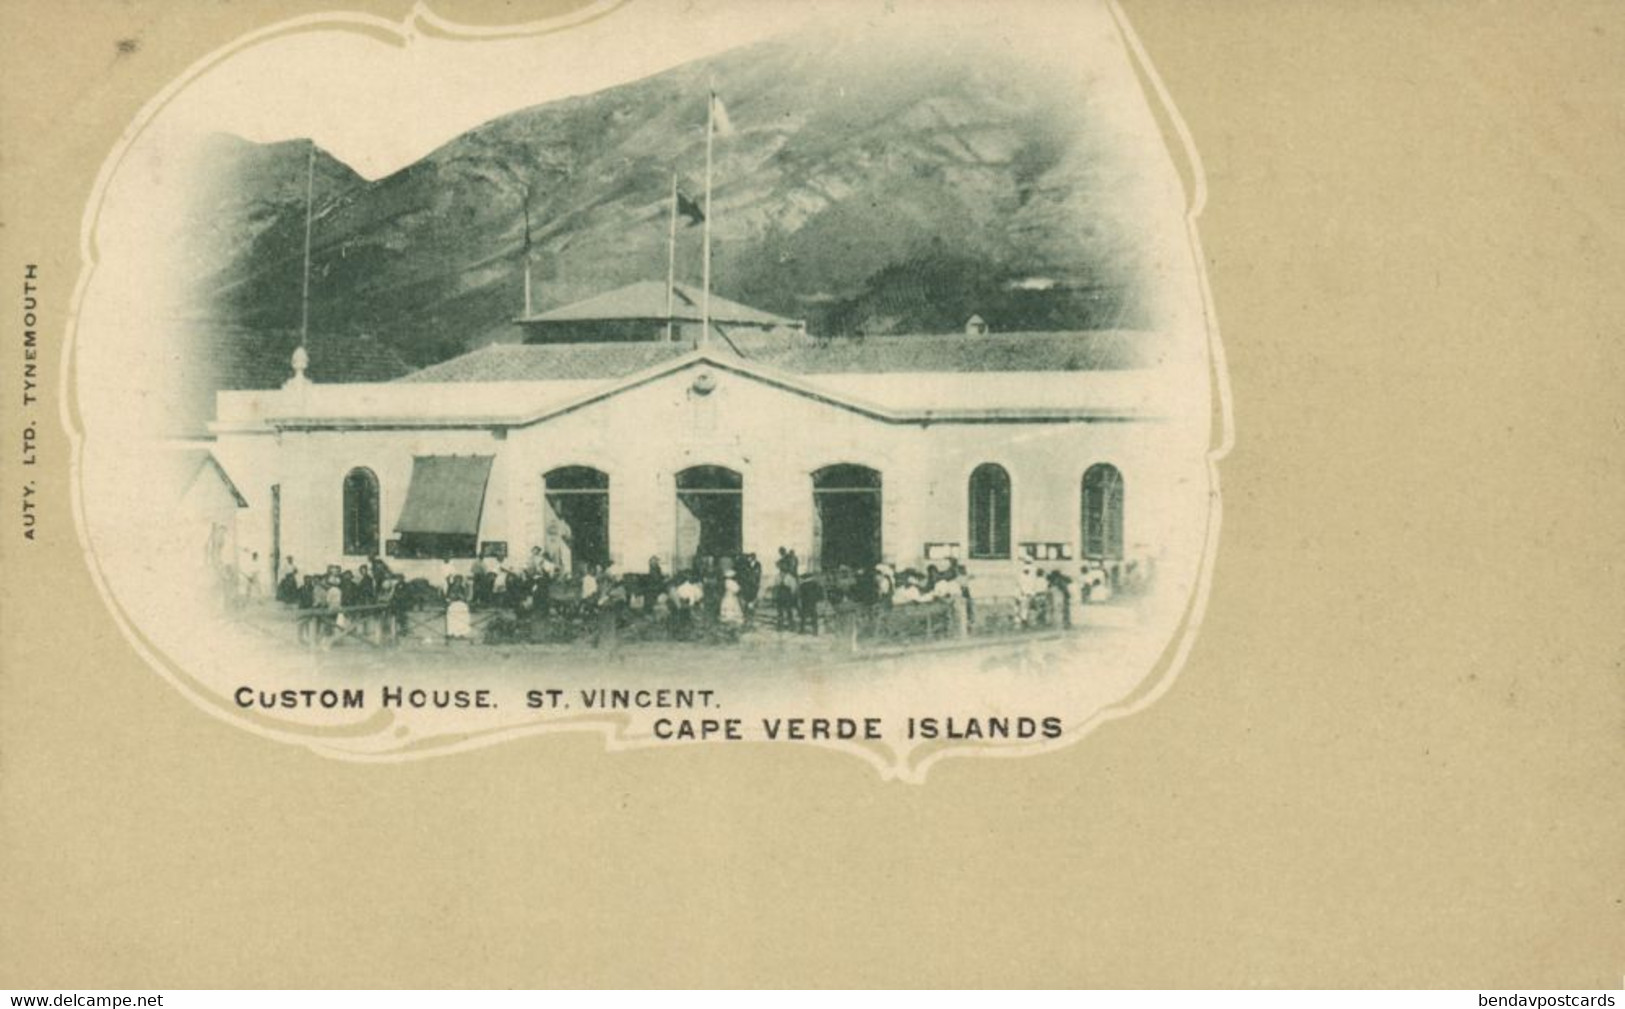 Cape Verde, SÃO VICENTE, Custom House (1900s) Postcard - Cap Vert